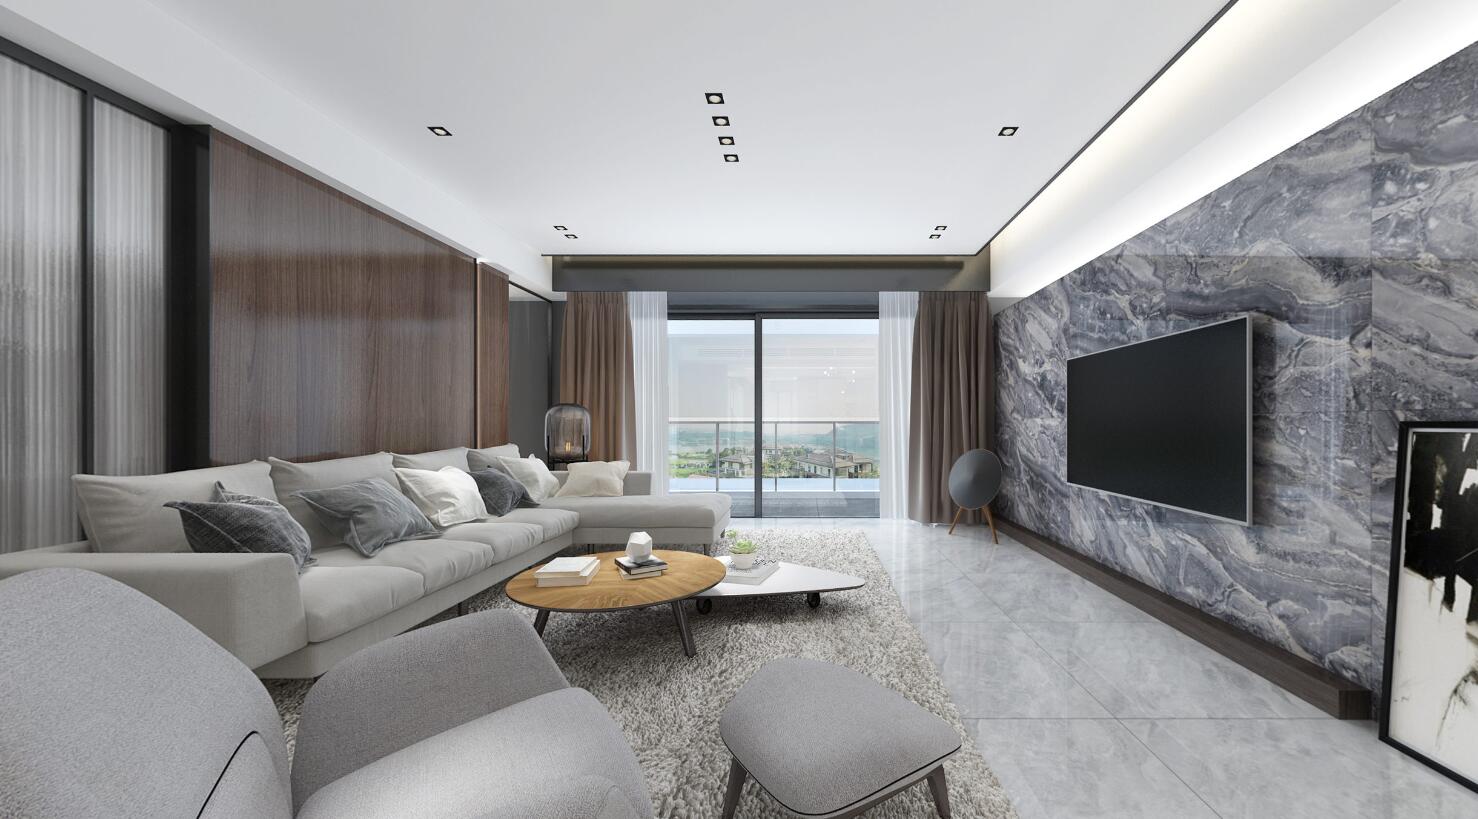 大理石瓷砖挪威森林IPGS90062客厅空间效果图